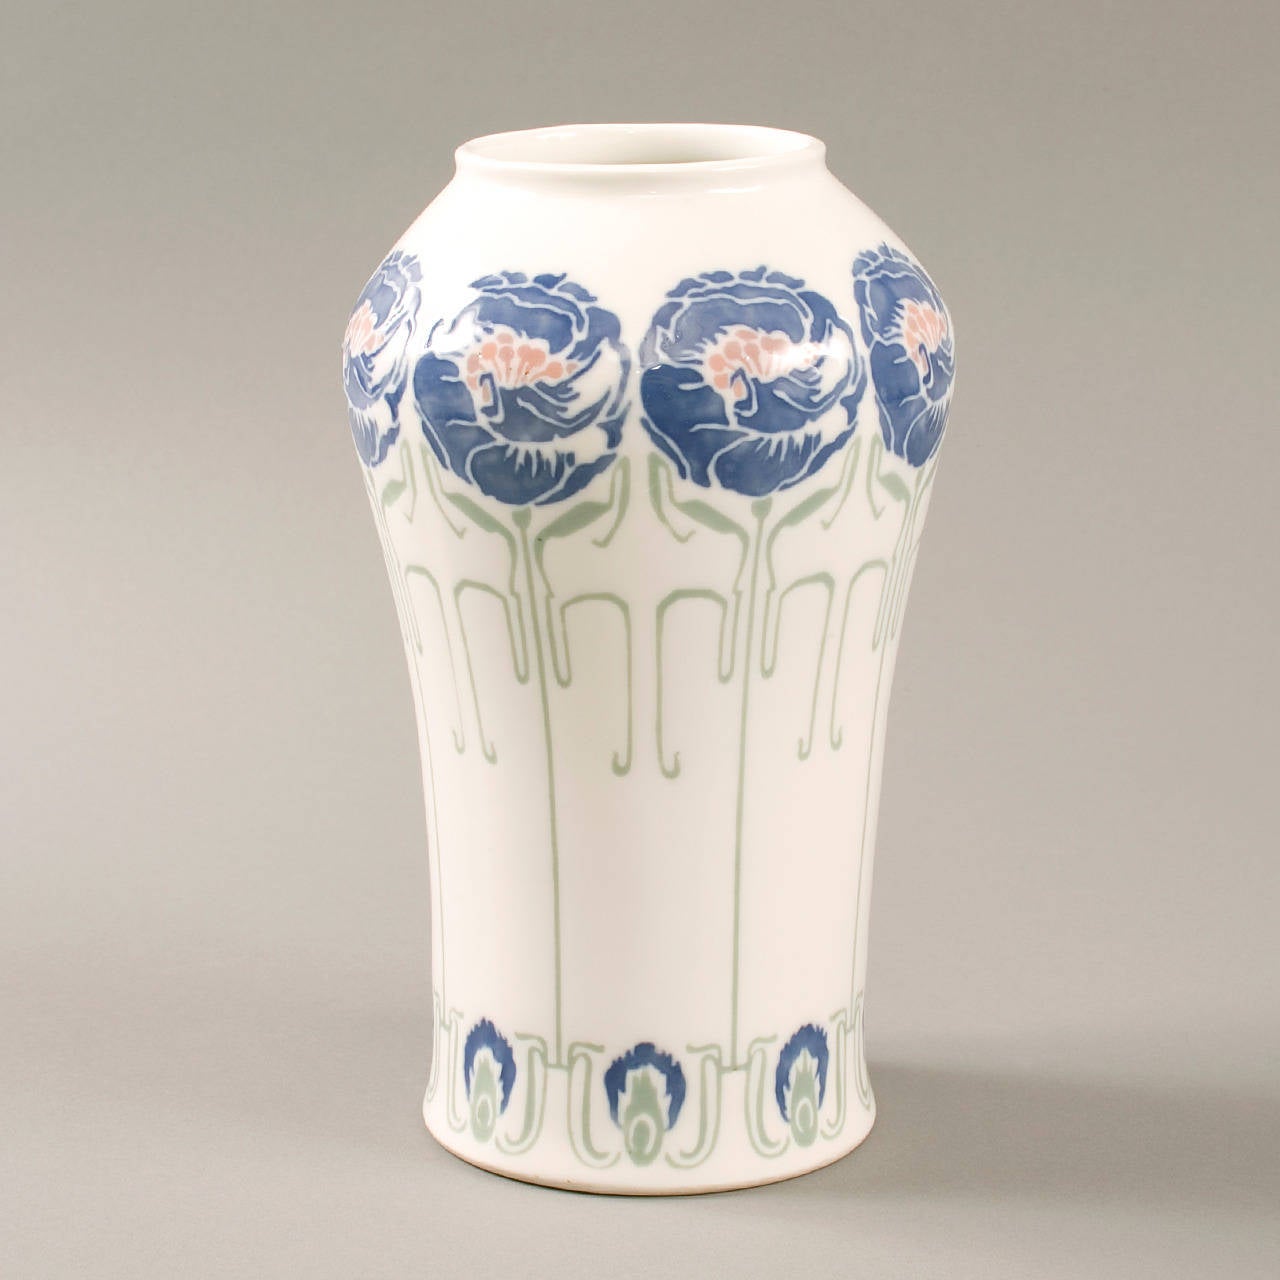 Vase en céramique Art nouveau français produit pour Bing par George de Feure, Gérard, Dufraisseix et Abbott. Le vase en porcelaine présente un décor floral réalisé en biscuit, émail bleu, rose et vert, zone blanche. Signé 